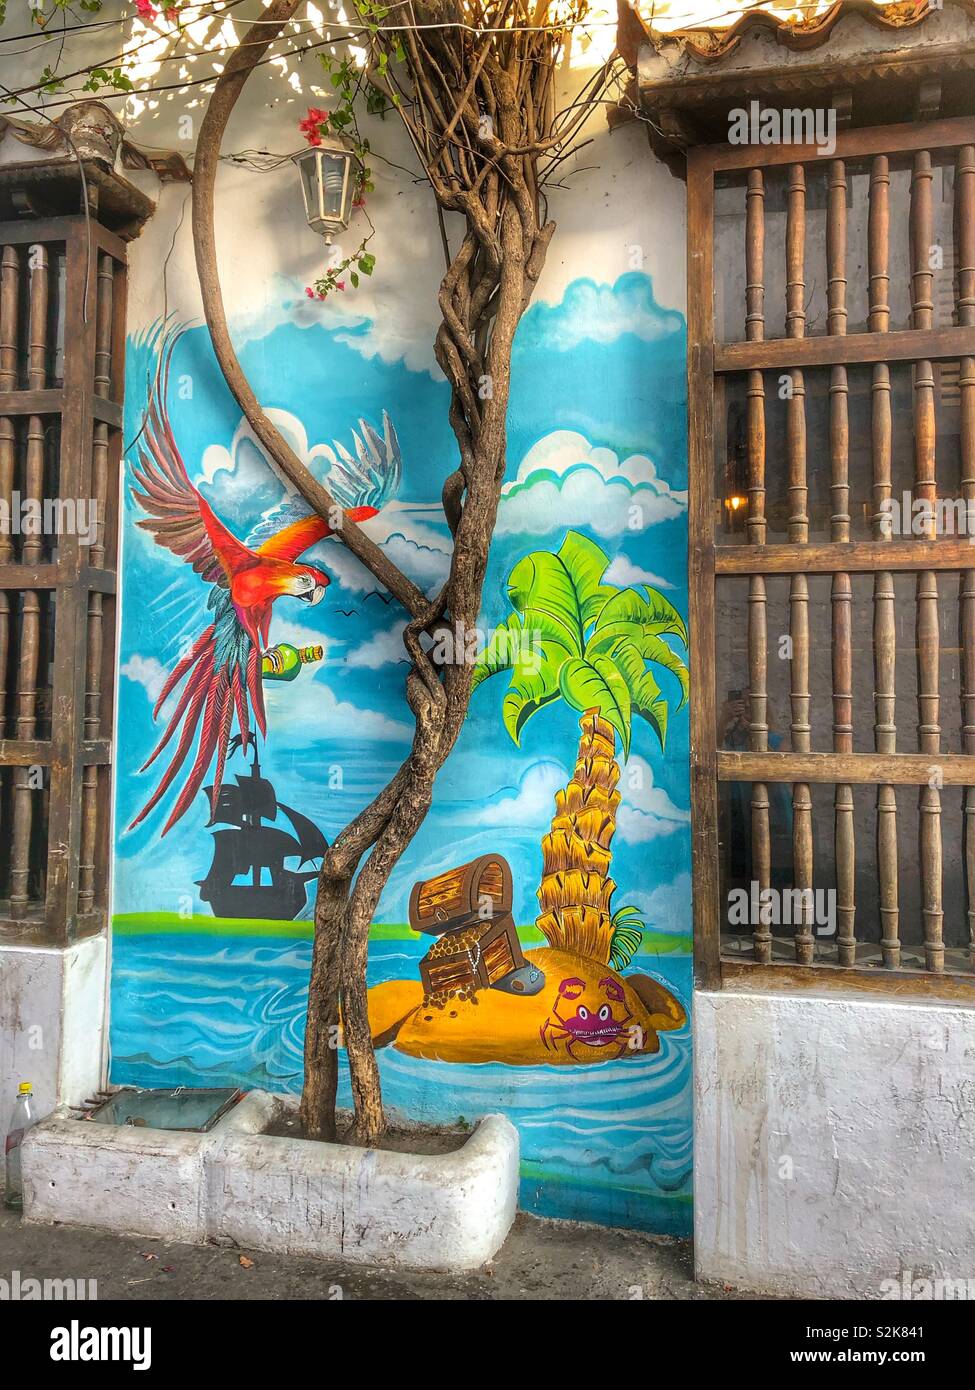 Arte callejero urbano en la histórica ciudad de Cartagena de Indias, Colombia. Foto de stock